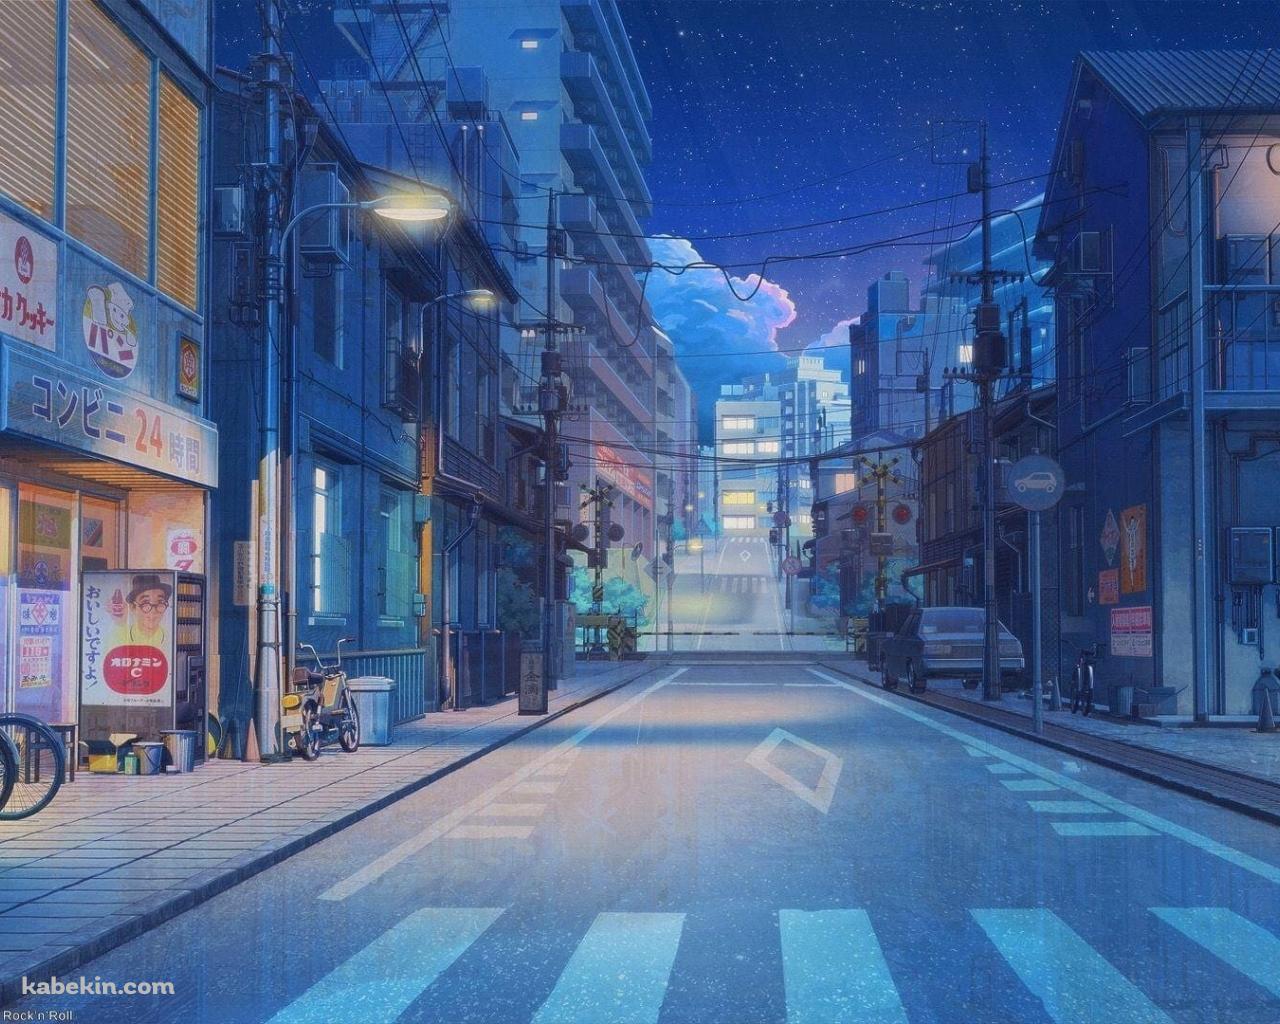 オロナミンCの看板 / ボンカレーの看板 / コンビニ 24時間営業 / 下町の夜の景色 / 日本の壁紙(1280px x 1024px) 高画質 PC・デスクトップ用